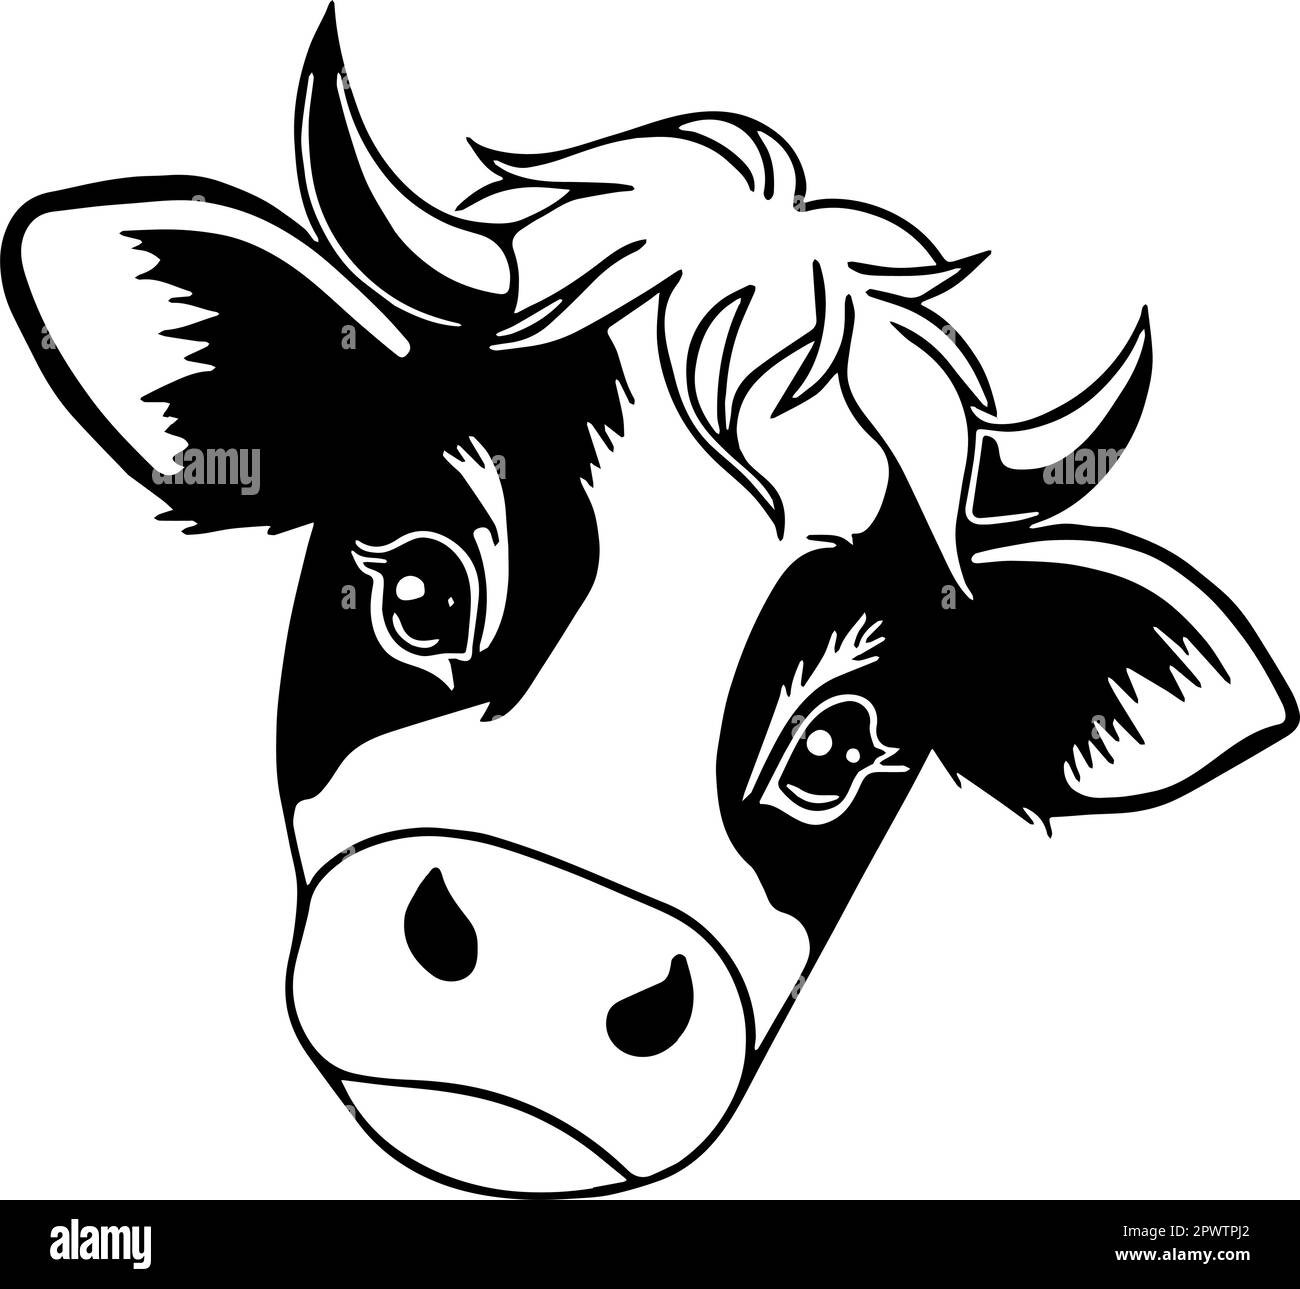 Süße junge Kuh mit schwarzen Flecken Symbol. Vektor der Konturen vor transparentem Hintergrund. Stock Vektor